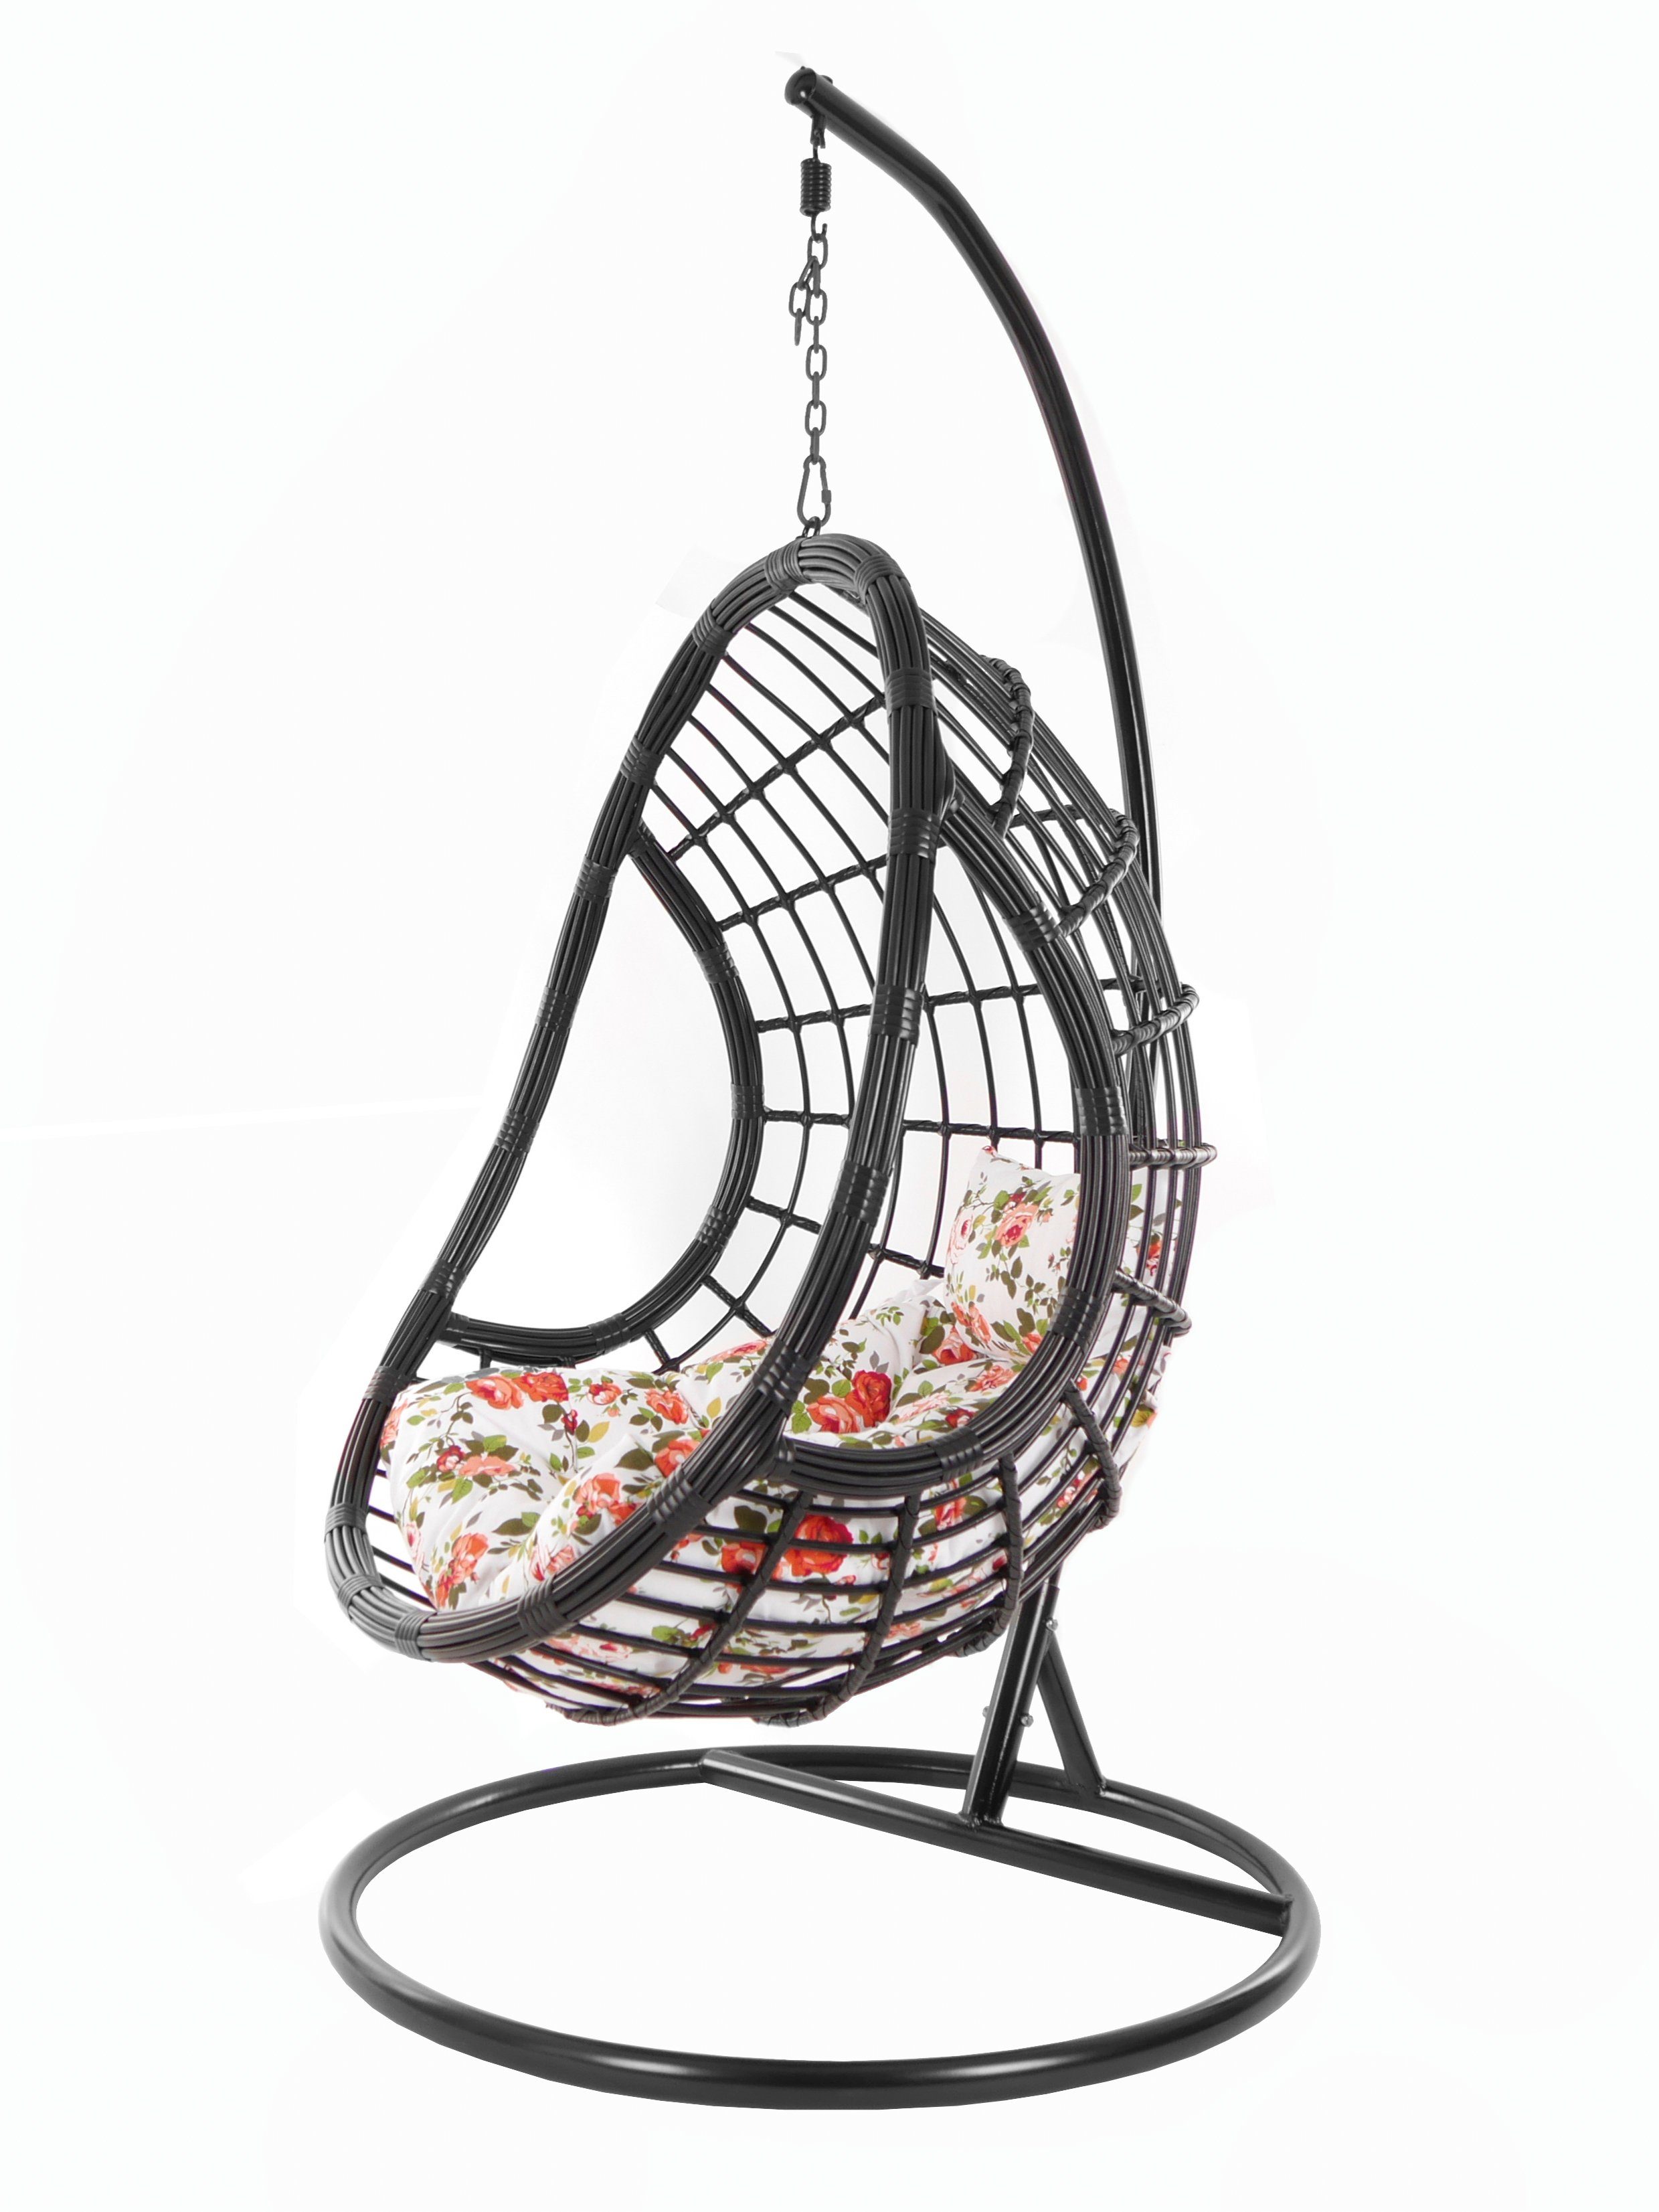 KIDEO Hängesessel PALMANOVA black, Swing (3761 Kissen, Design Chair, Loungemöbel, schwarz, rosen edles roses) Schwebesessel, mit Gestell und Hängesessel